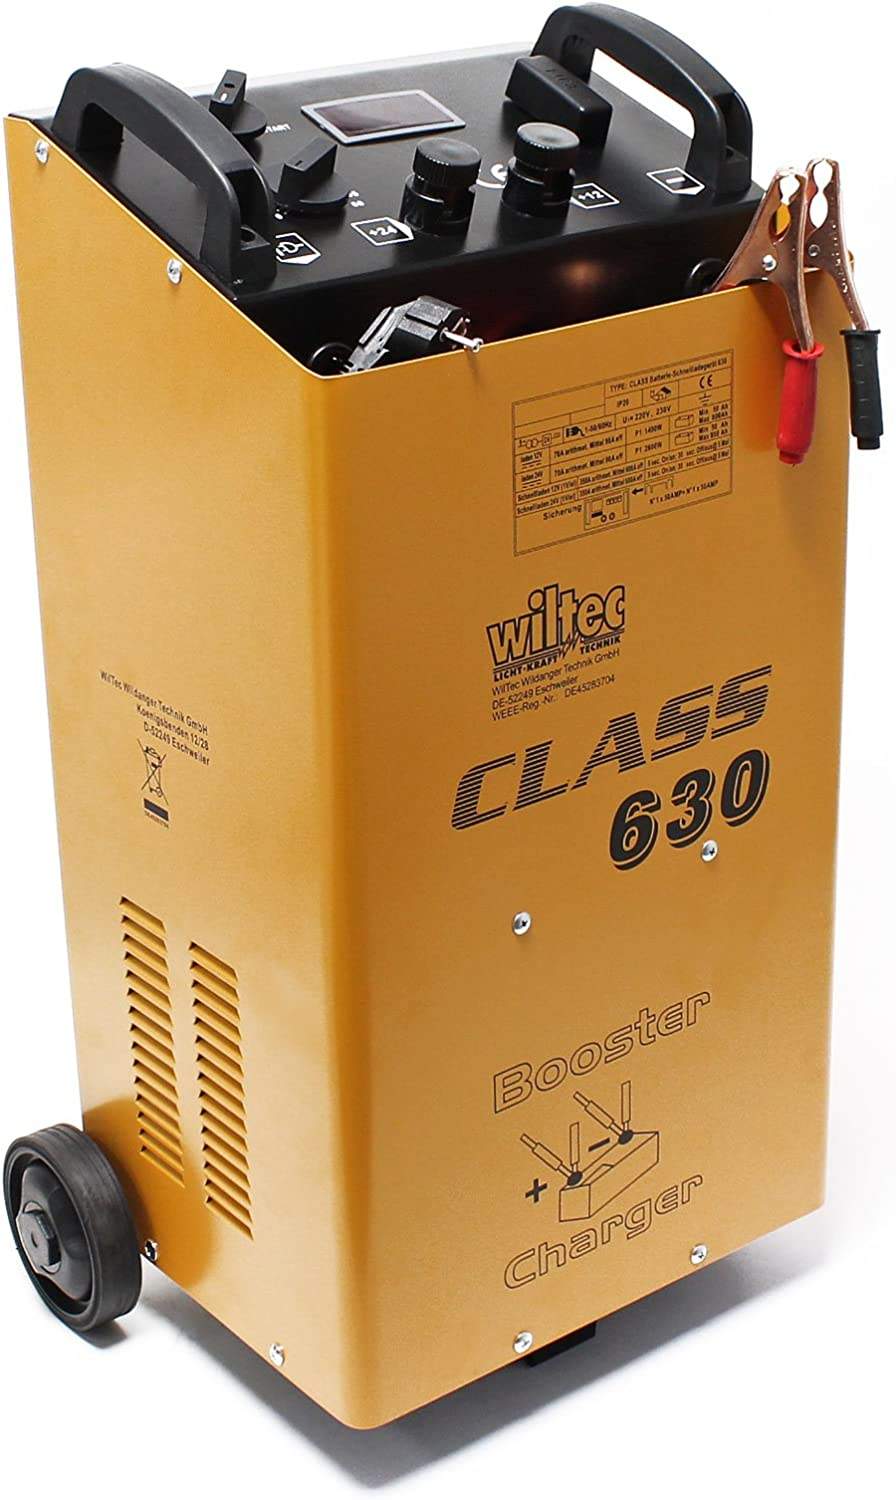 Il caricabatterie per auto WilTec Booster 630